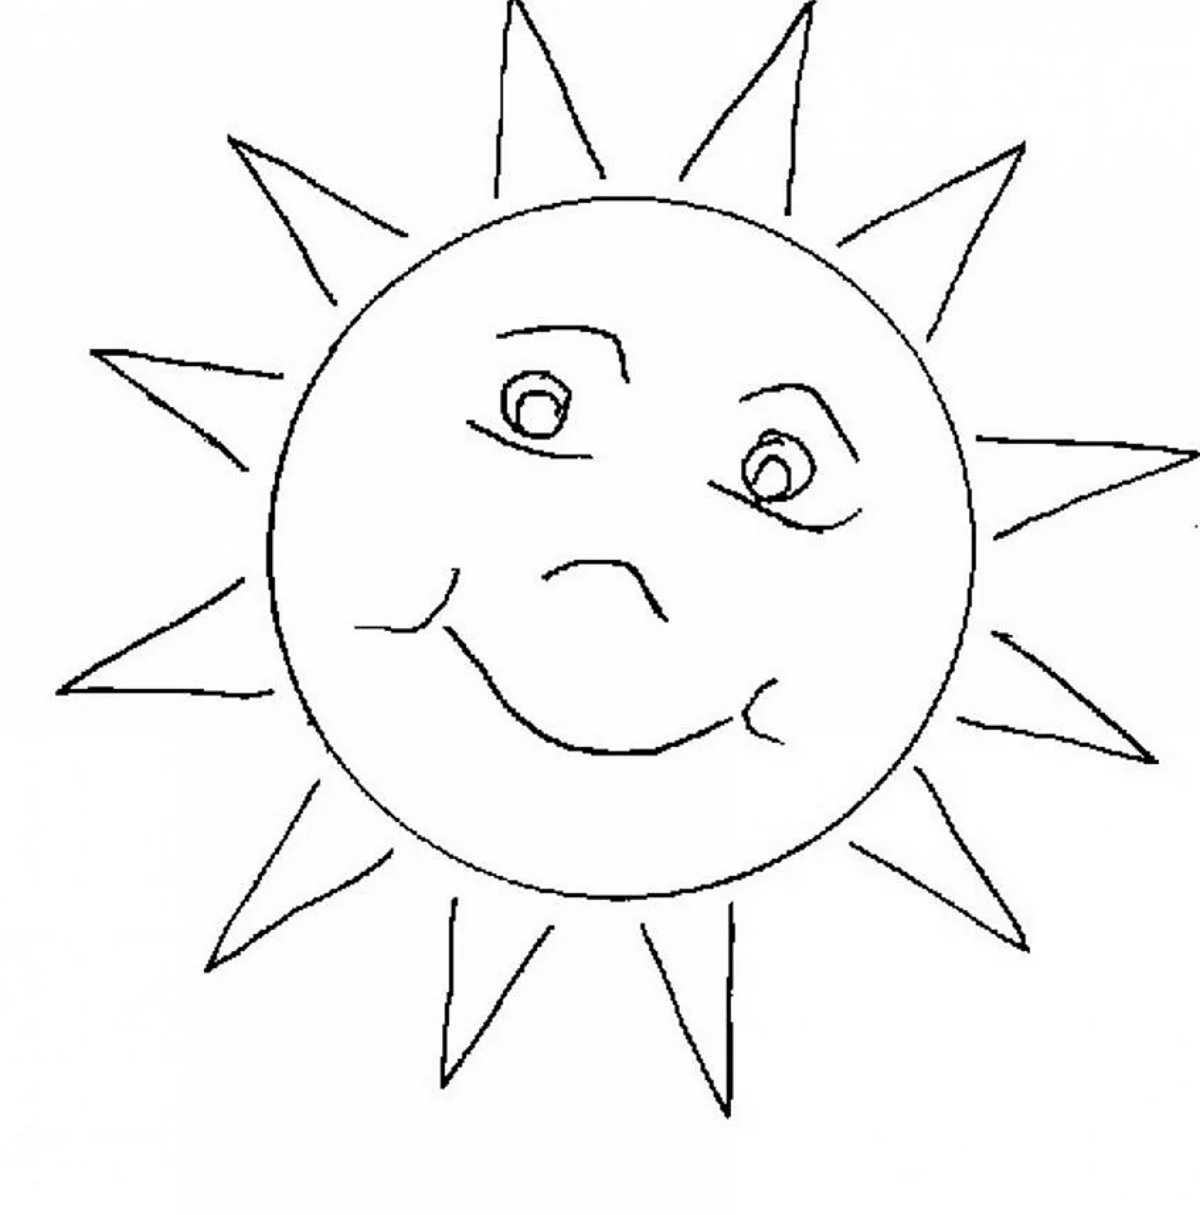 Солнце картинка для детей раскраска. Своими руками